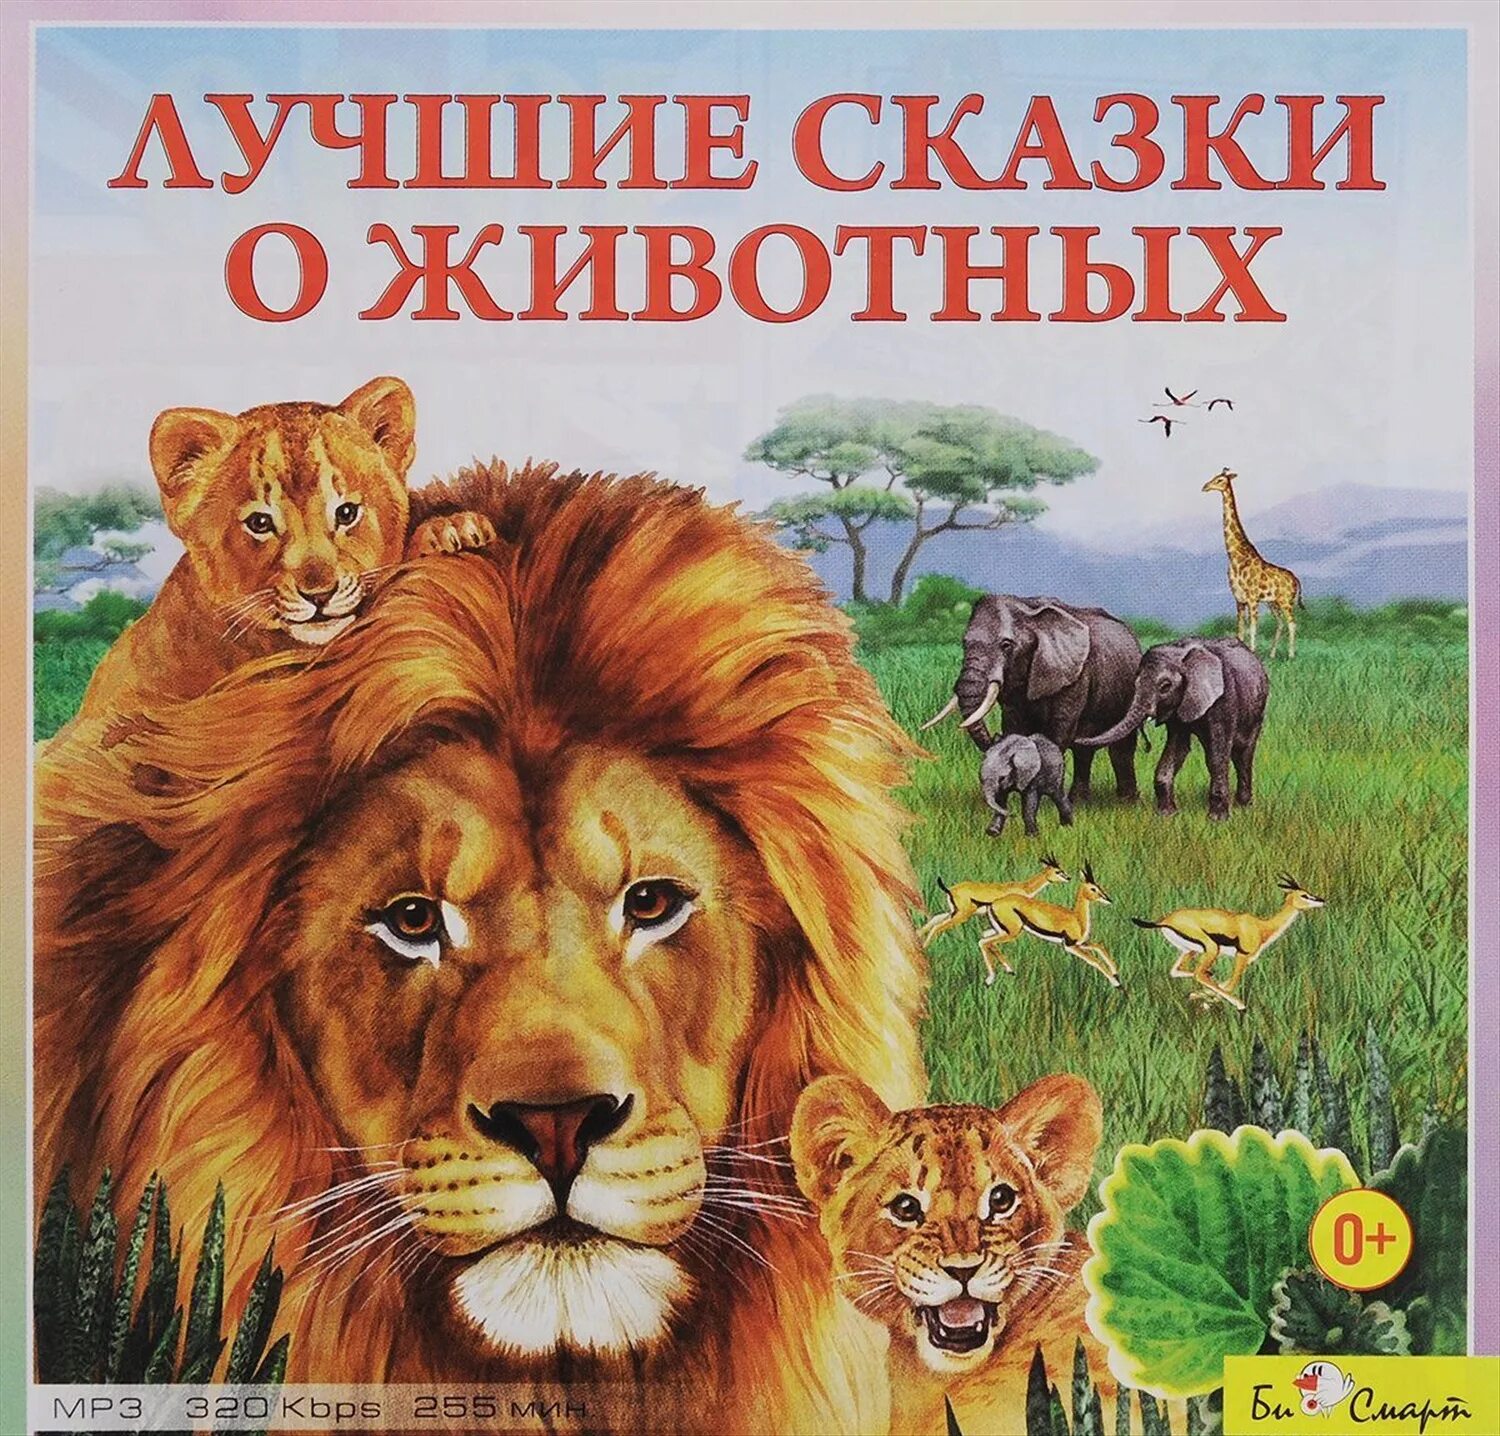 Книги о животных. Книги о животных для детей. Популярные книги о животных для детей. Обложки книг о животных для детей.